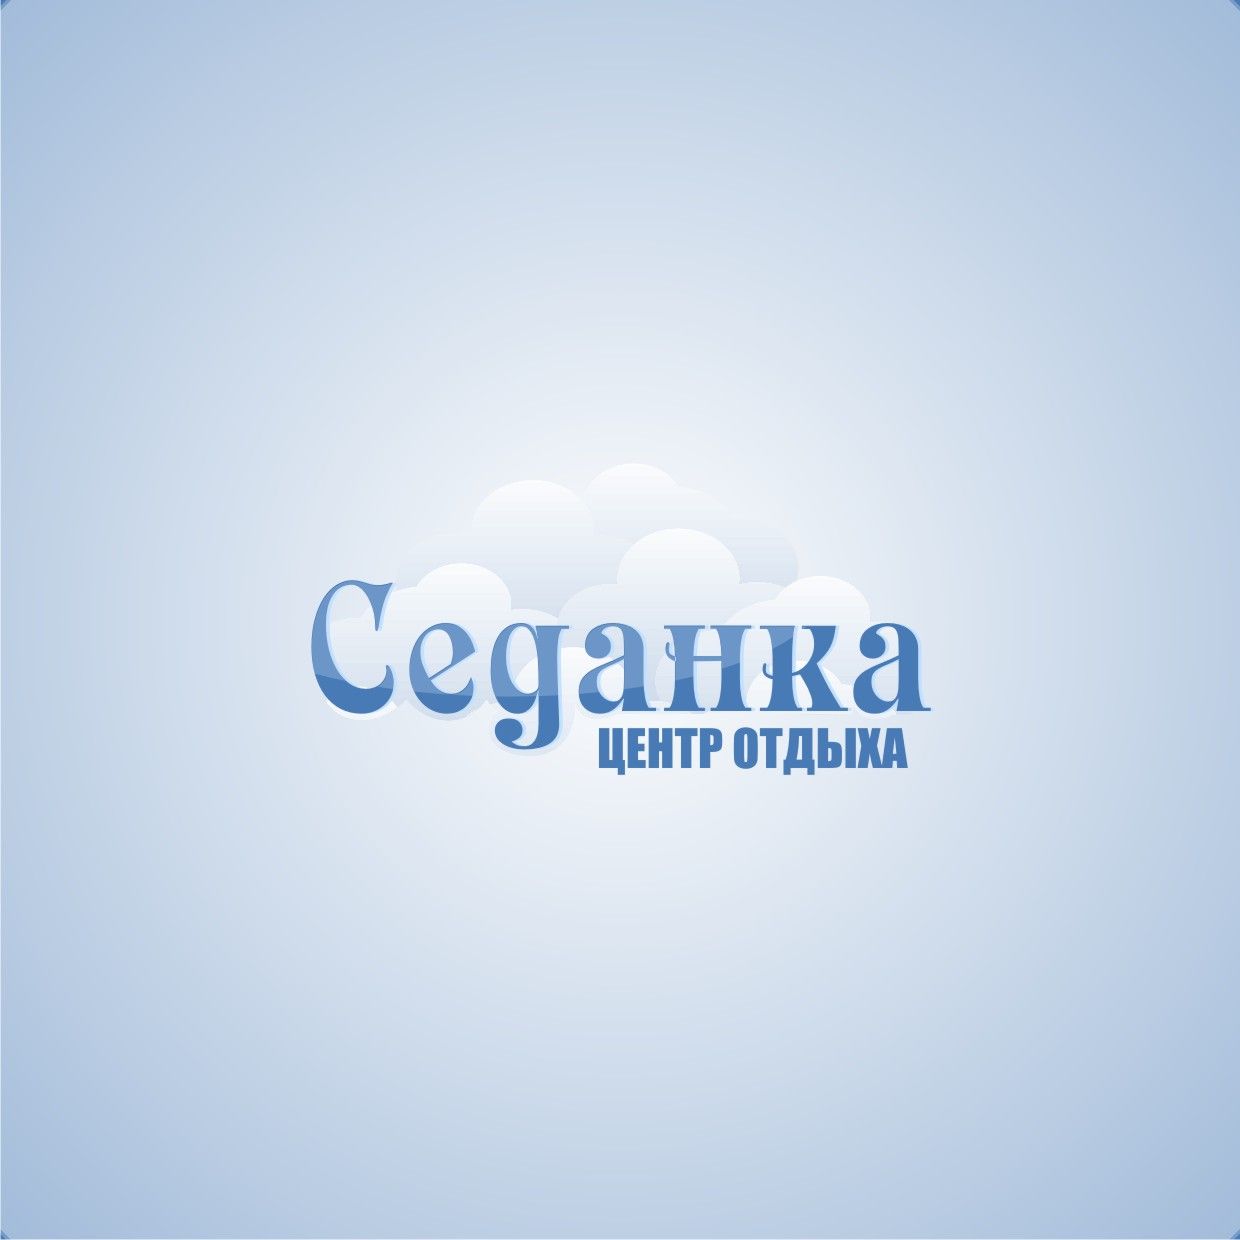 Логотип для центра отдыха - дизайнер Tatiana